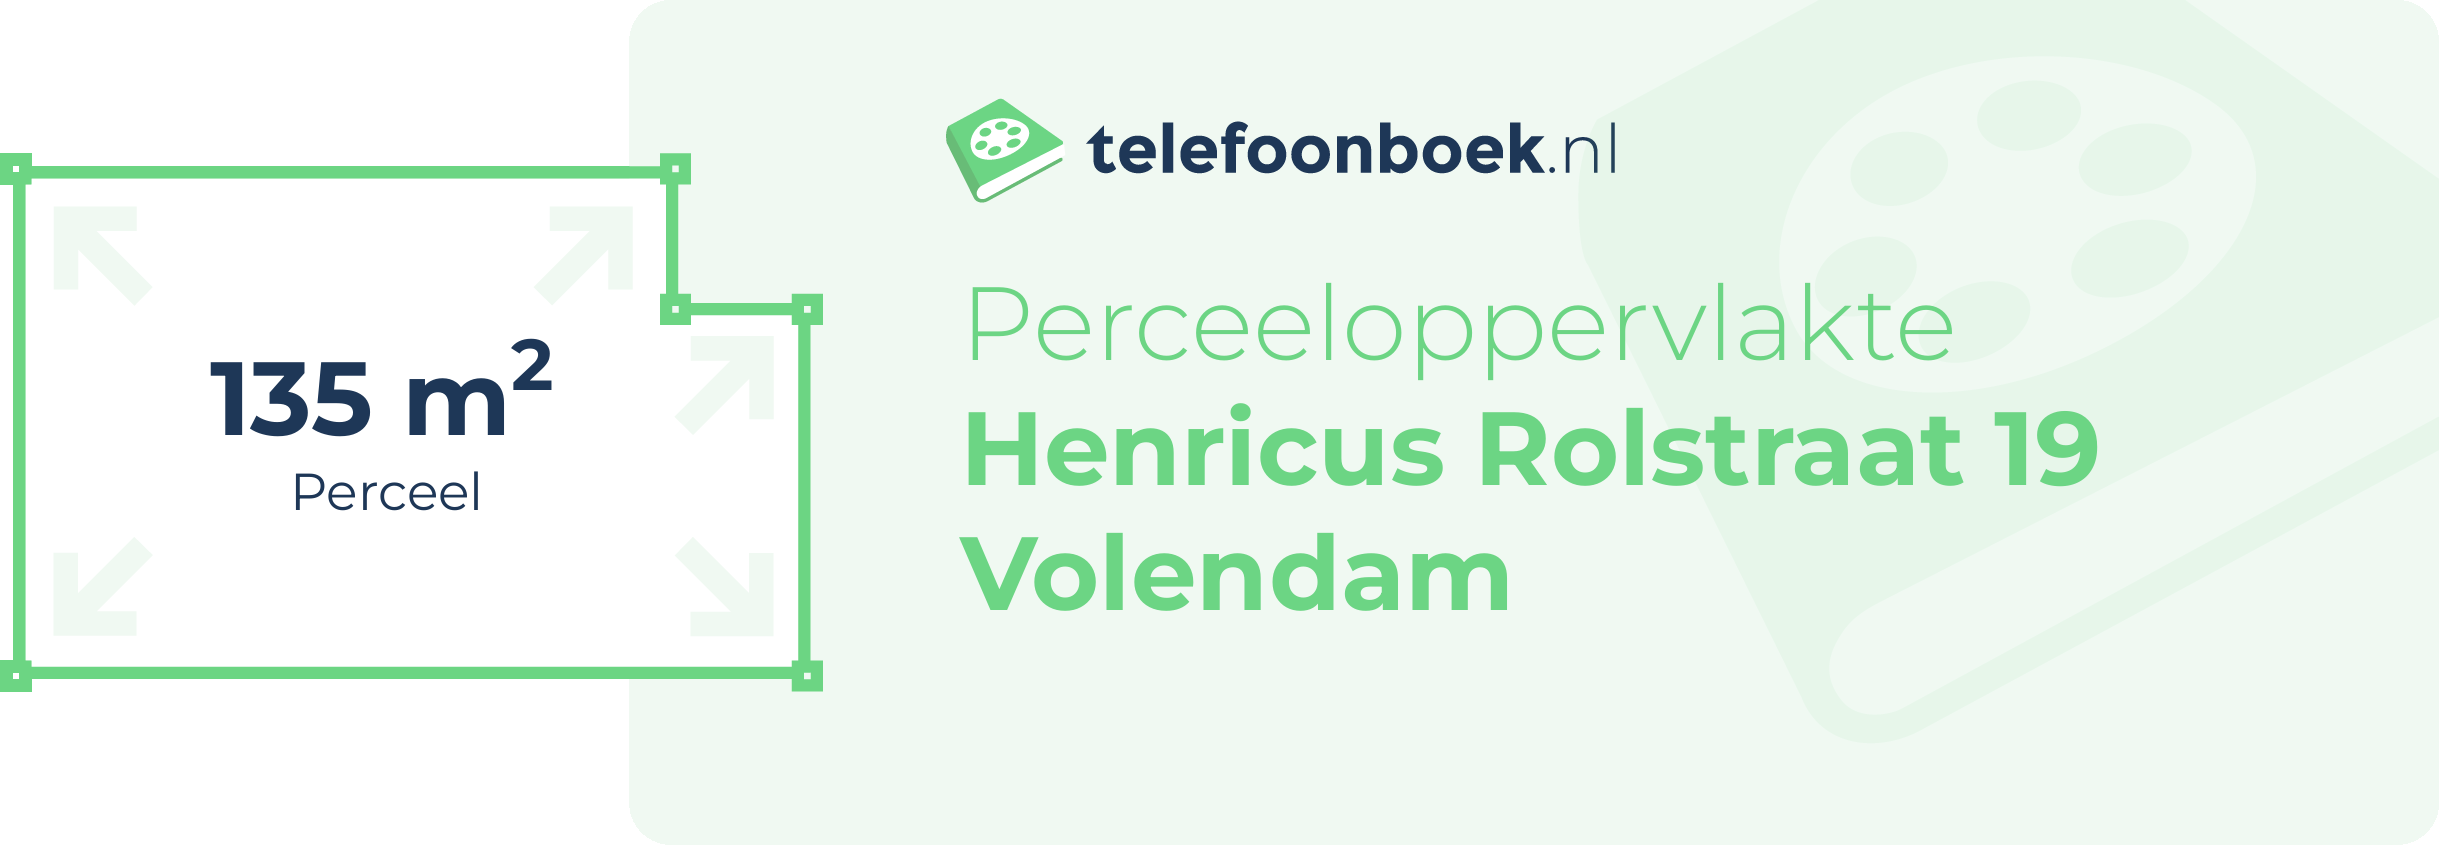 Perceeloppervlakte Henricus Rolstraat 19 Volendam